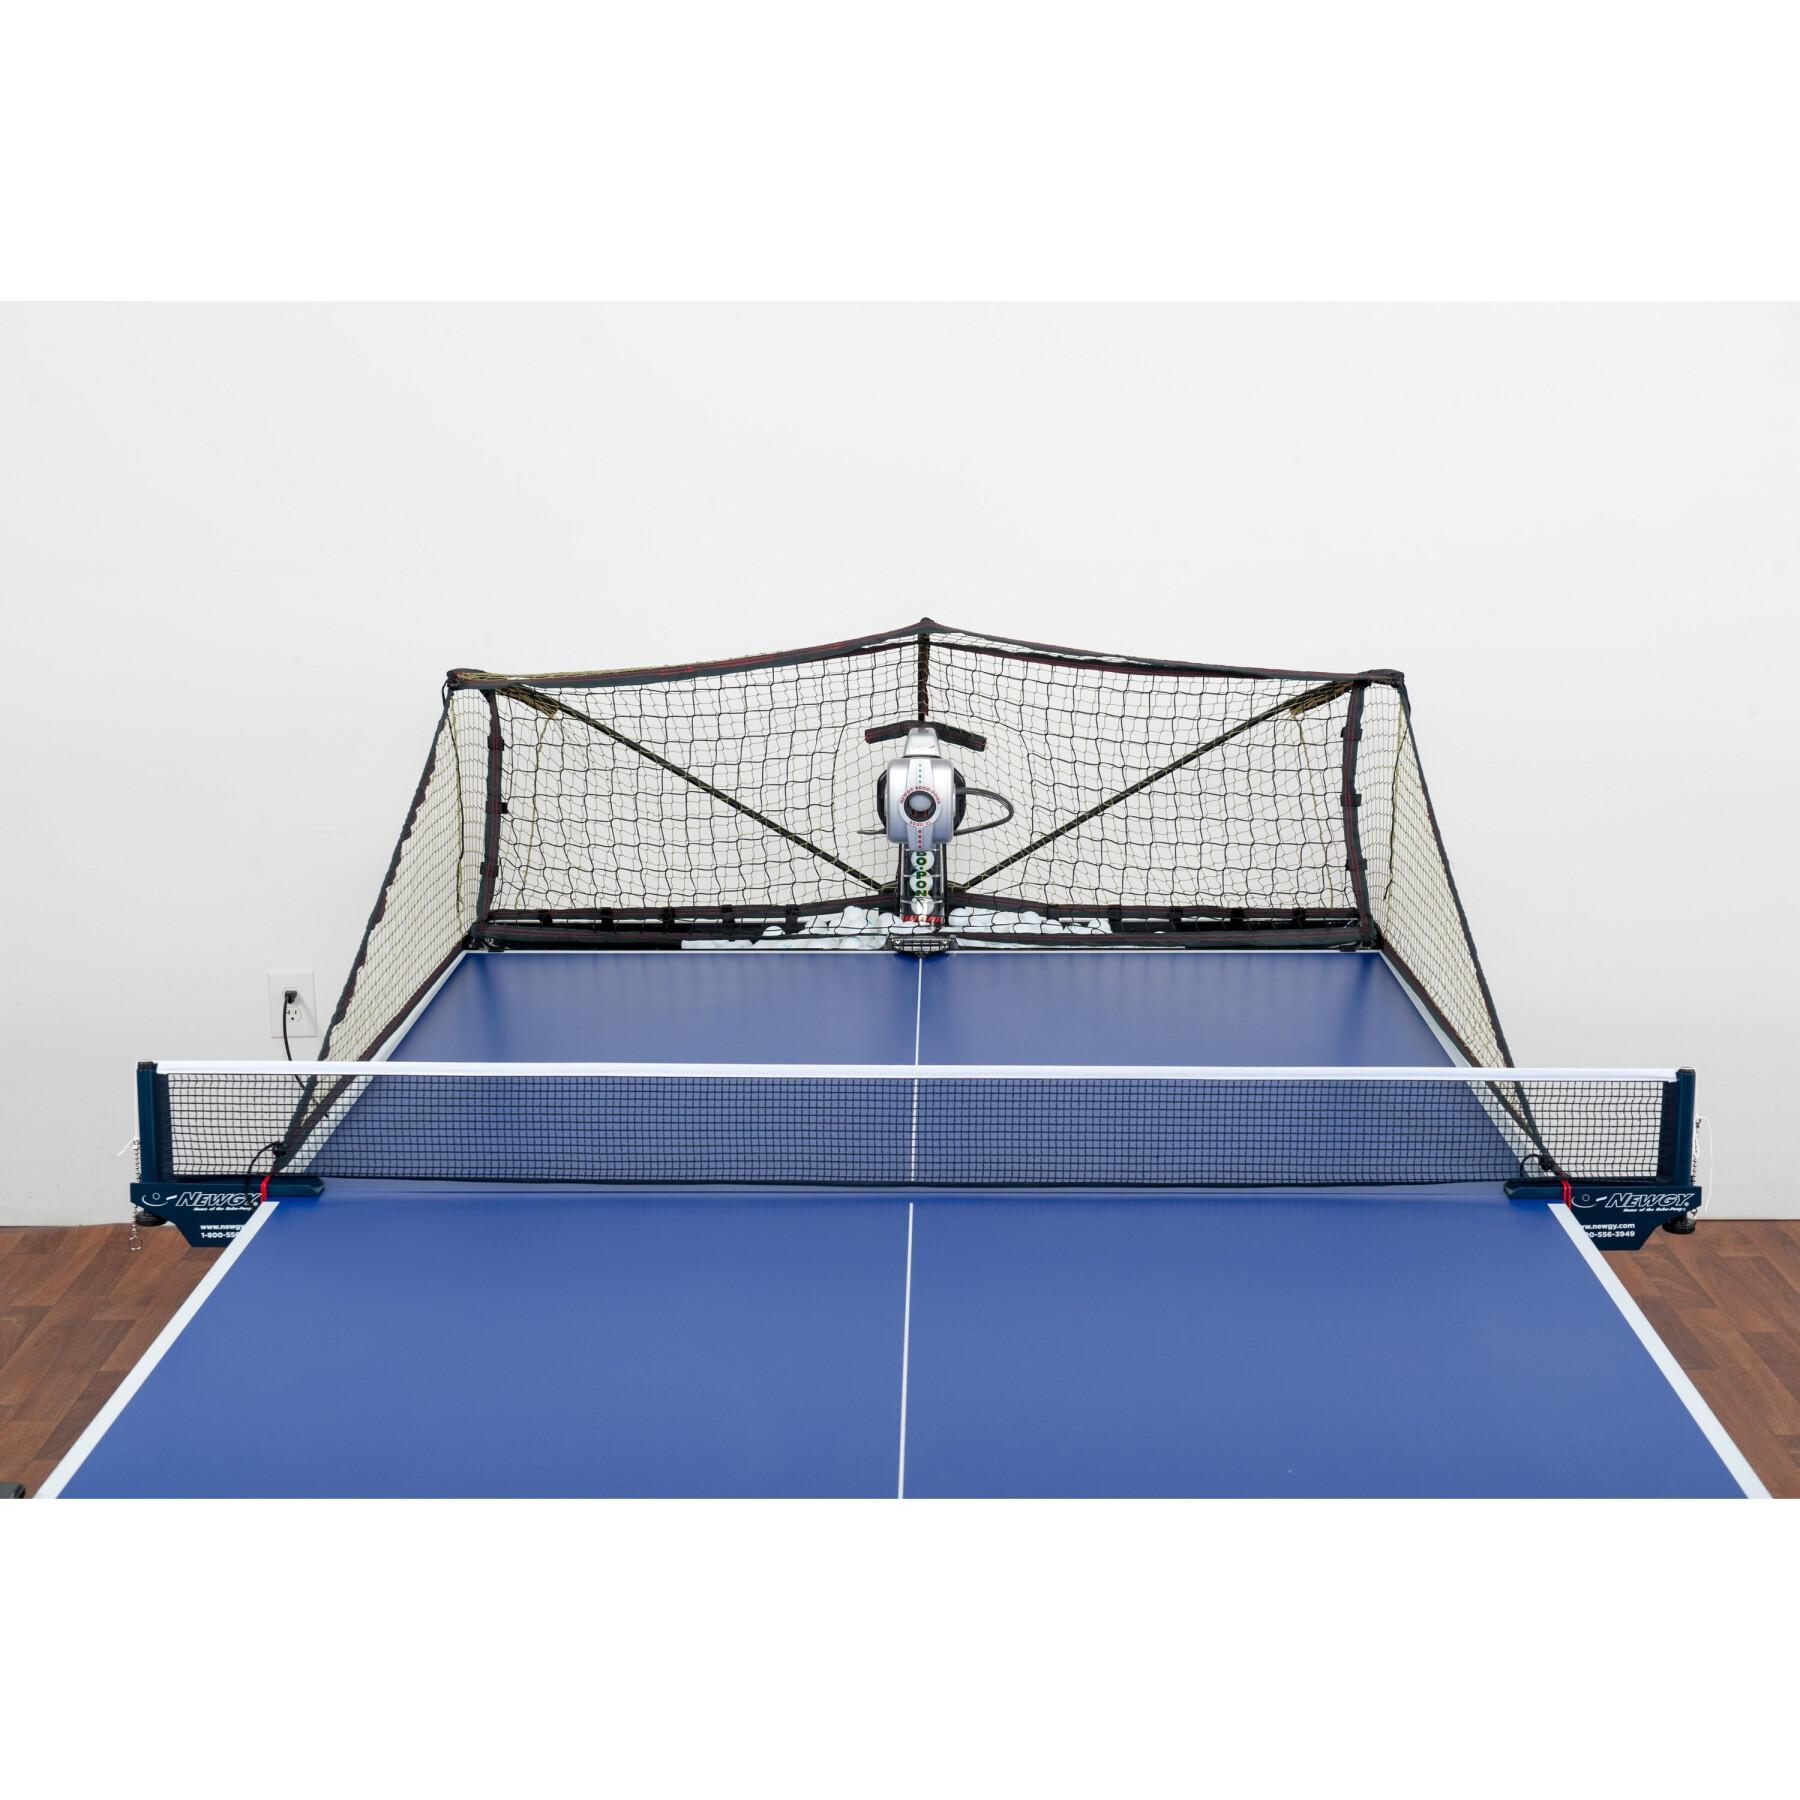 Lance balles de tennis de table Donic Robo-Pong 3050XL